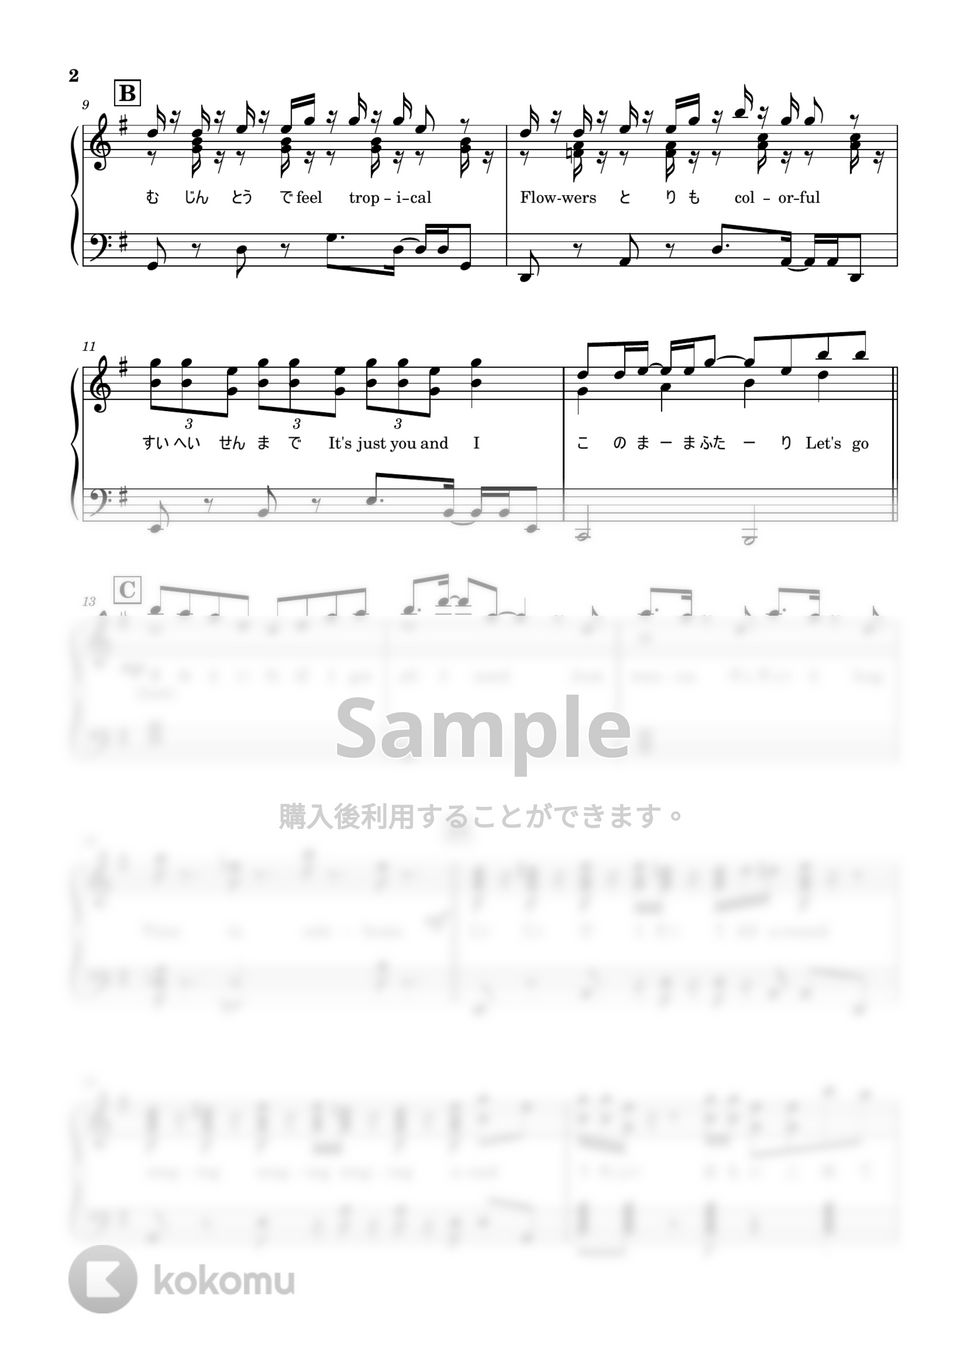 NiZiU - COCONUT (歌詞付き/ピアノ) by reo piano